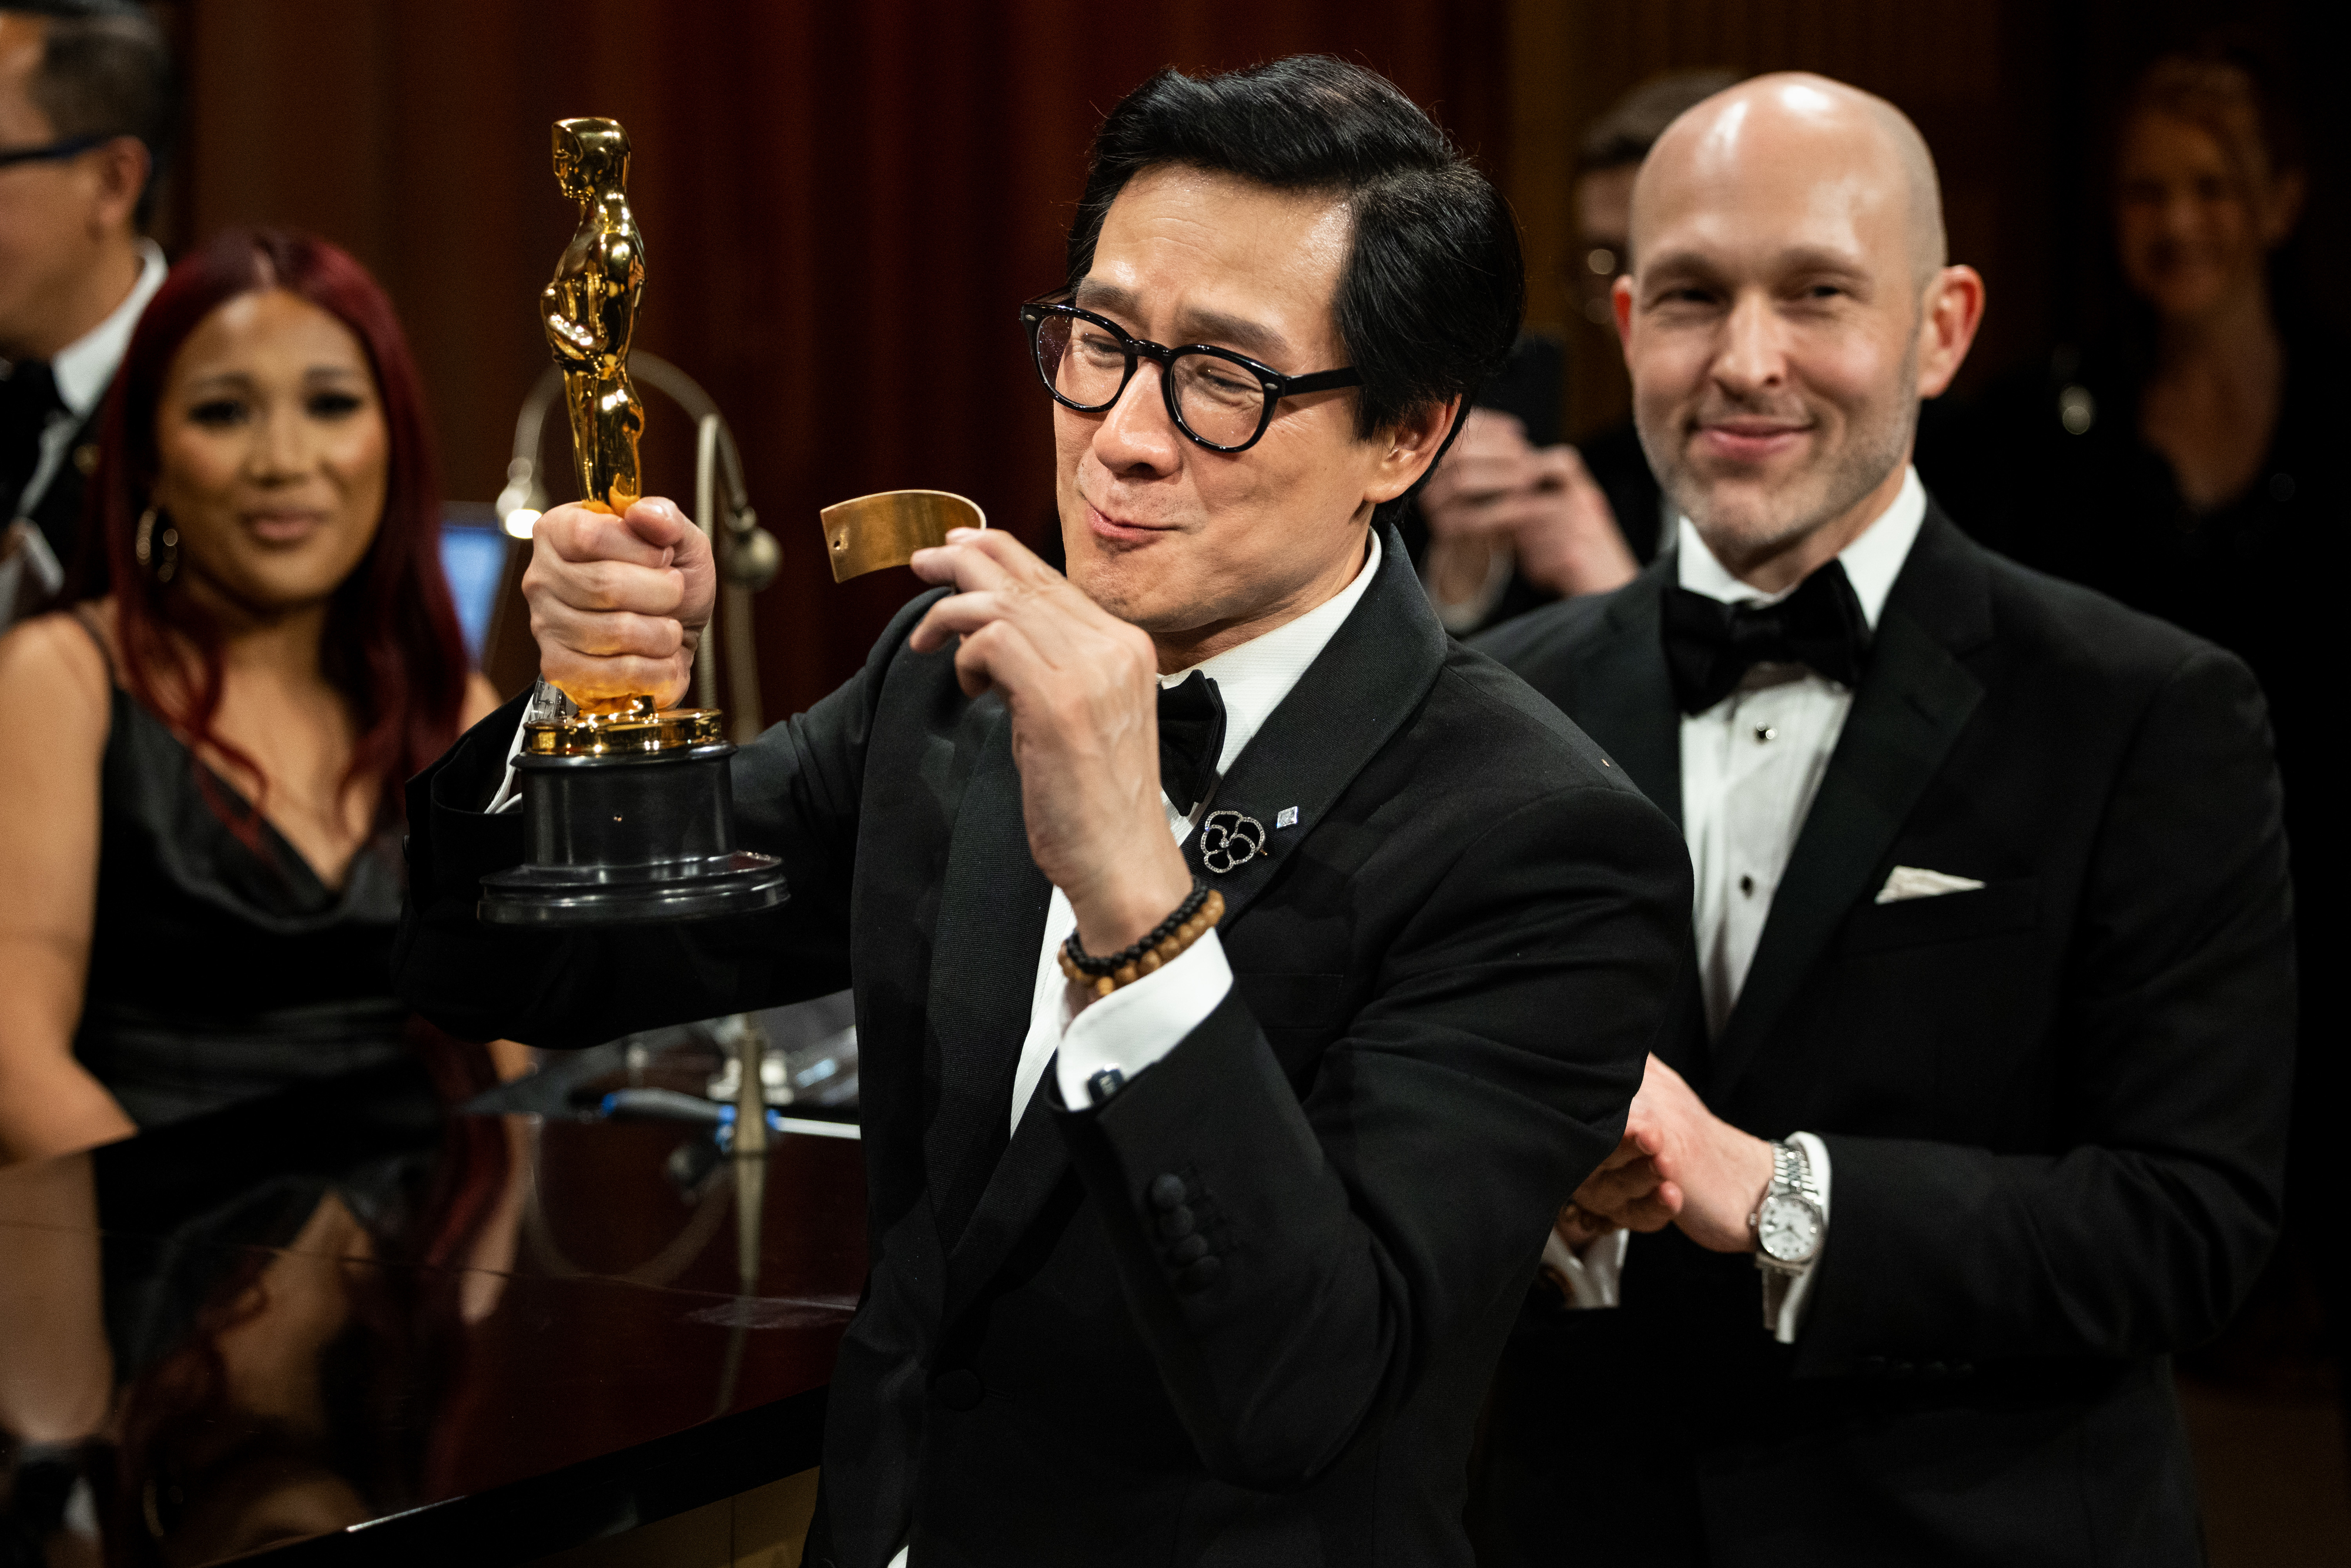 Ke Huy Quan with his Oscar